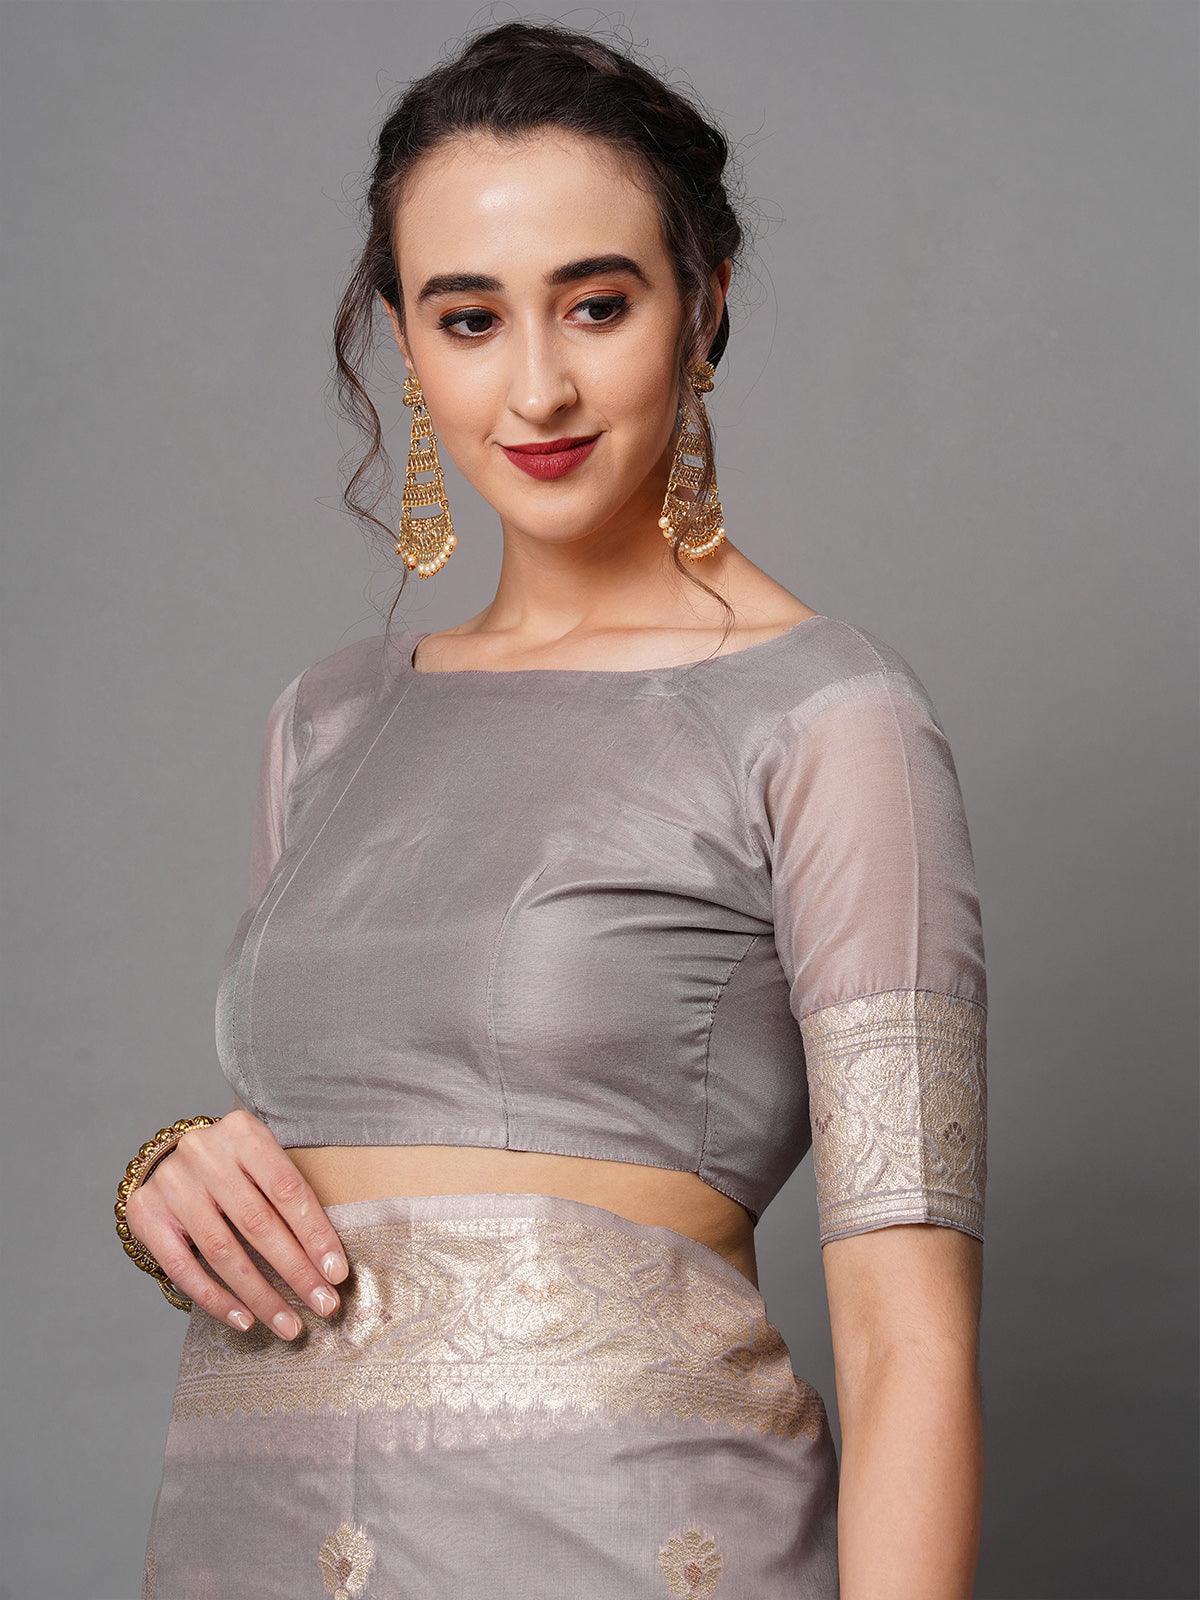 Women's Mauve Festive Silk Blend Woven Design Saree With Unstitched Blouse - Odette